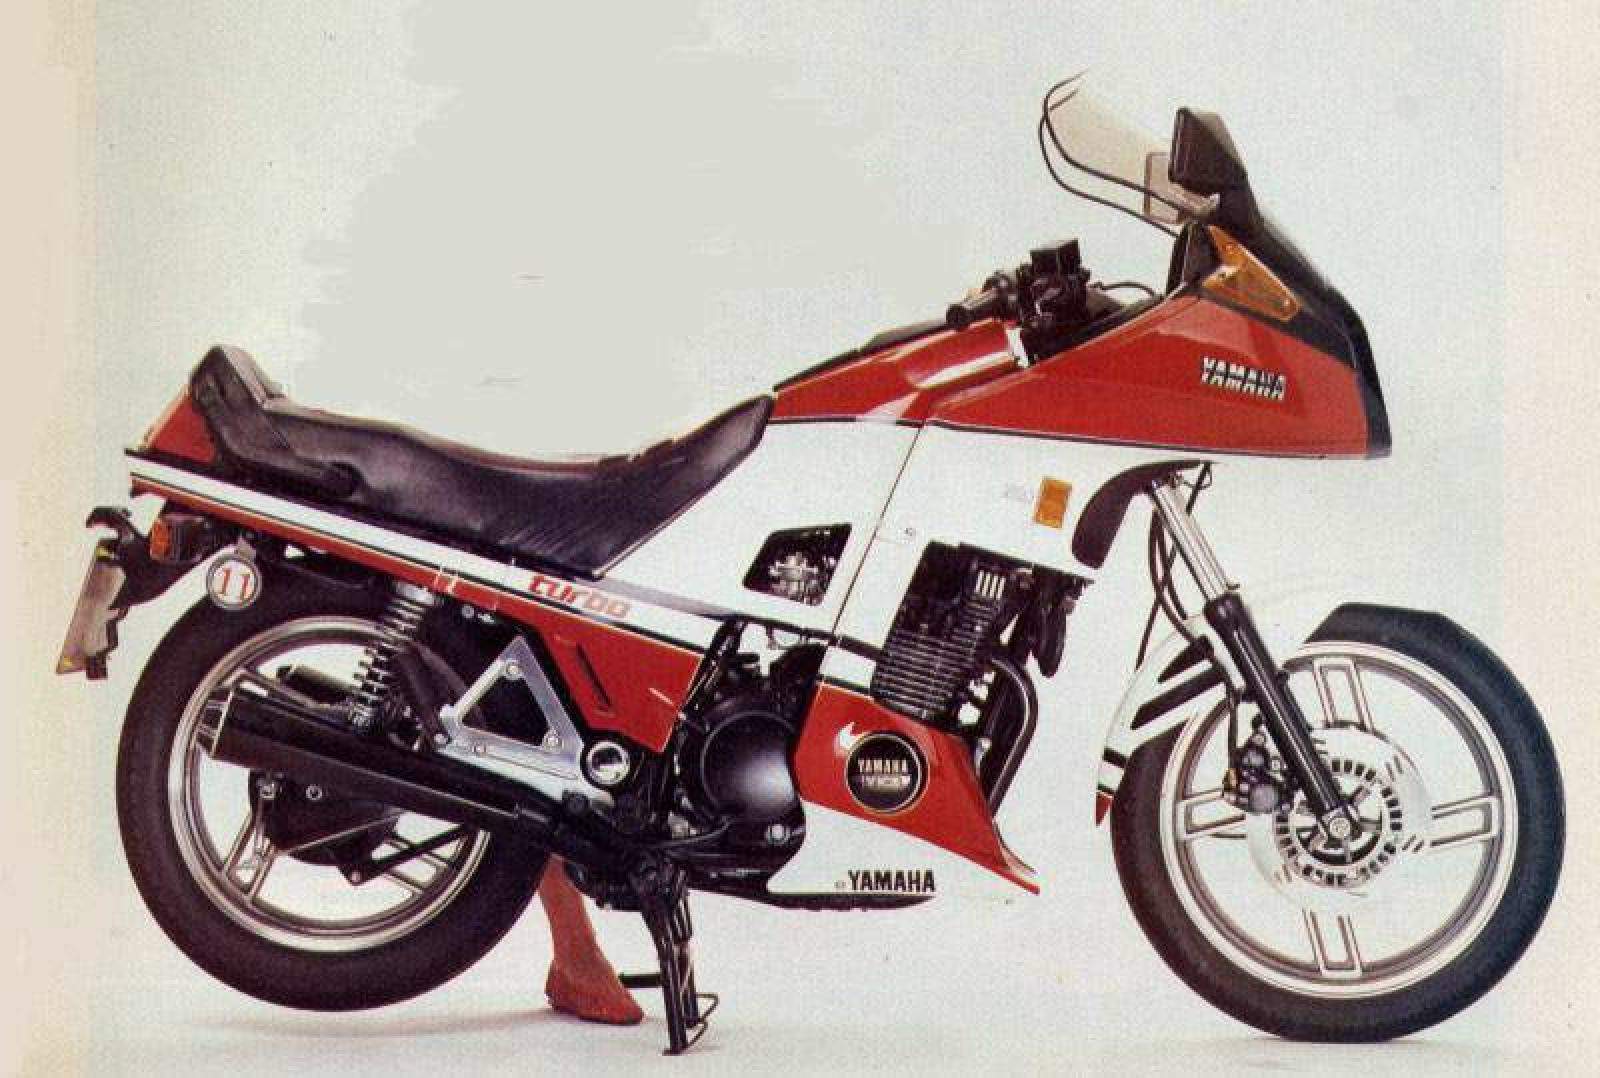 Especificaciones técnicas de Yamaha XJ 650 Turbo (1985-86)